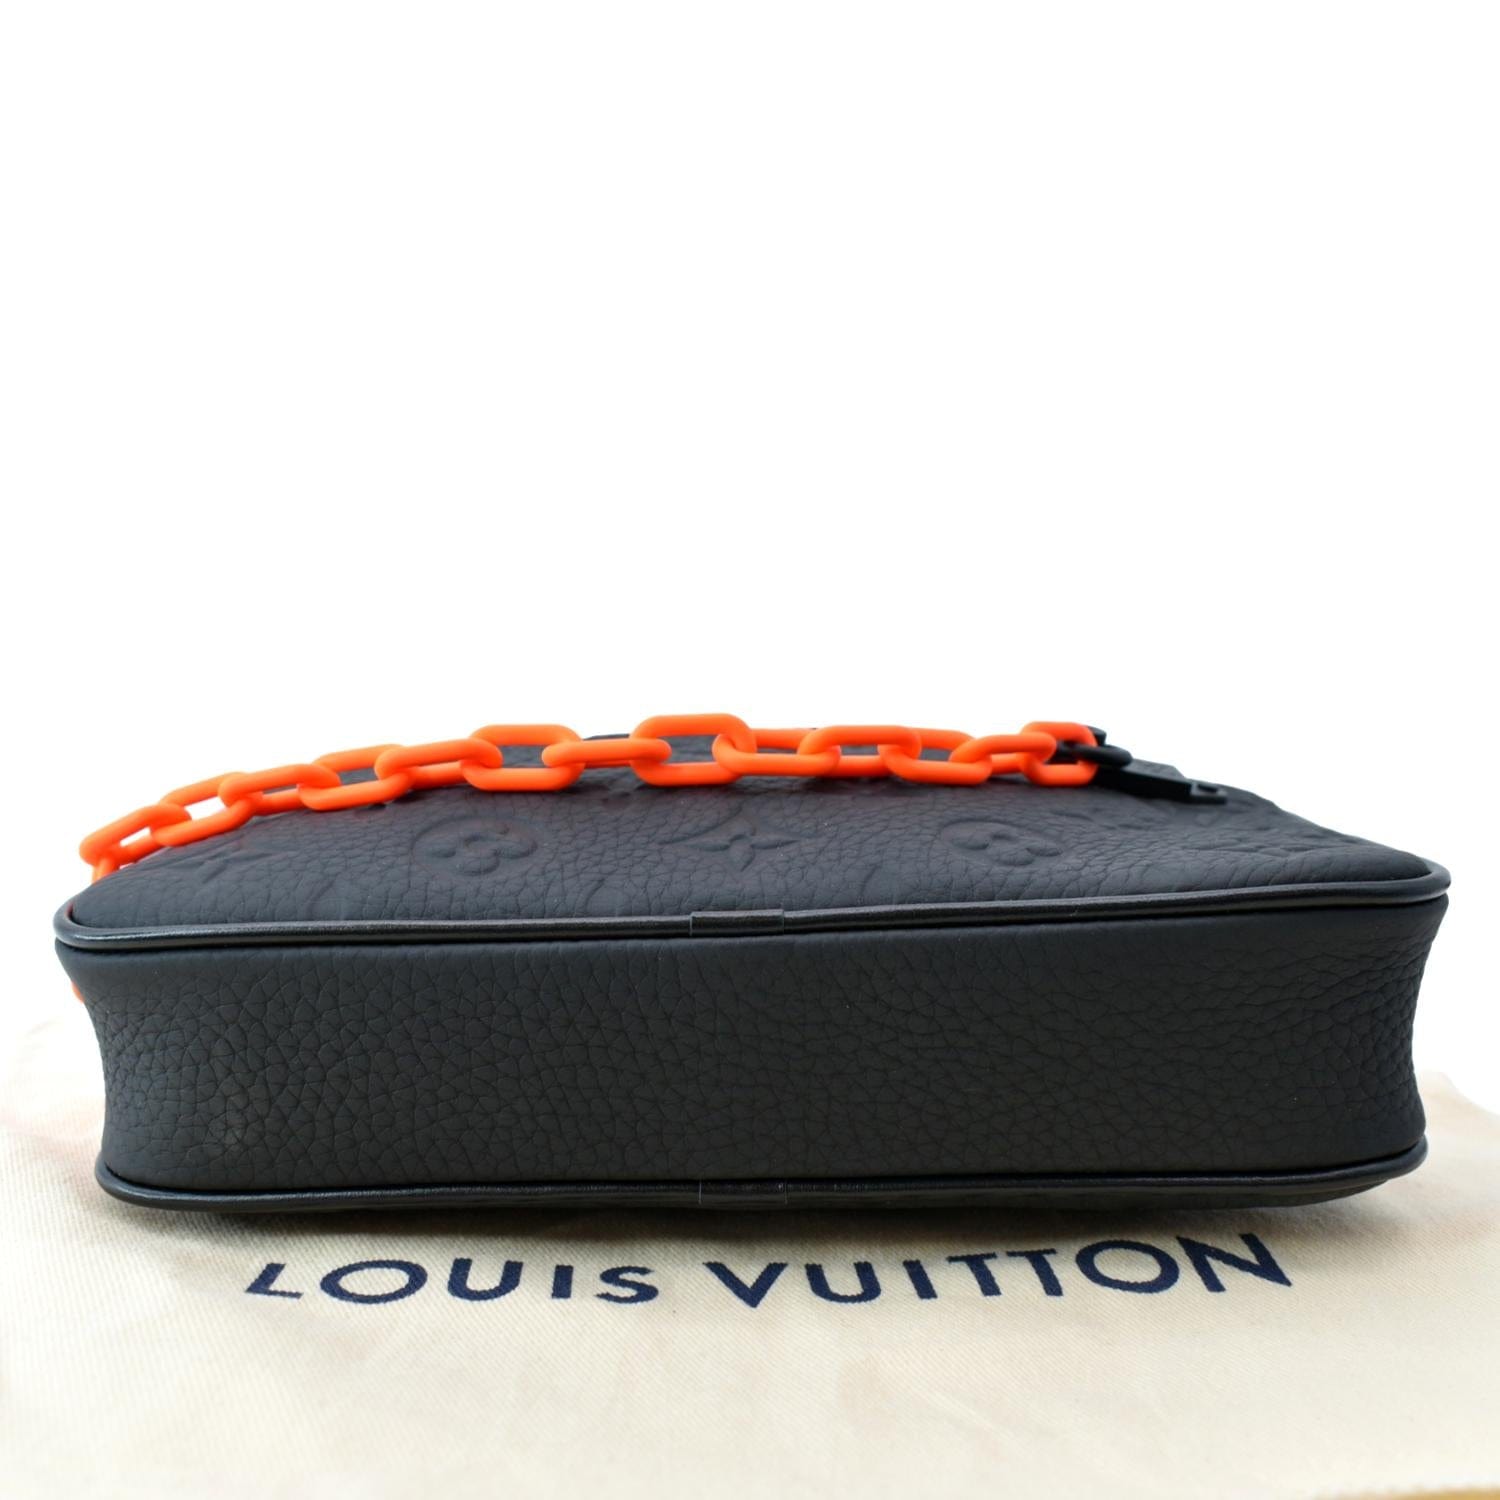 Louis Vuitton Pochette Volga Monogram Empreinte Orange Black für